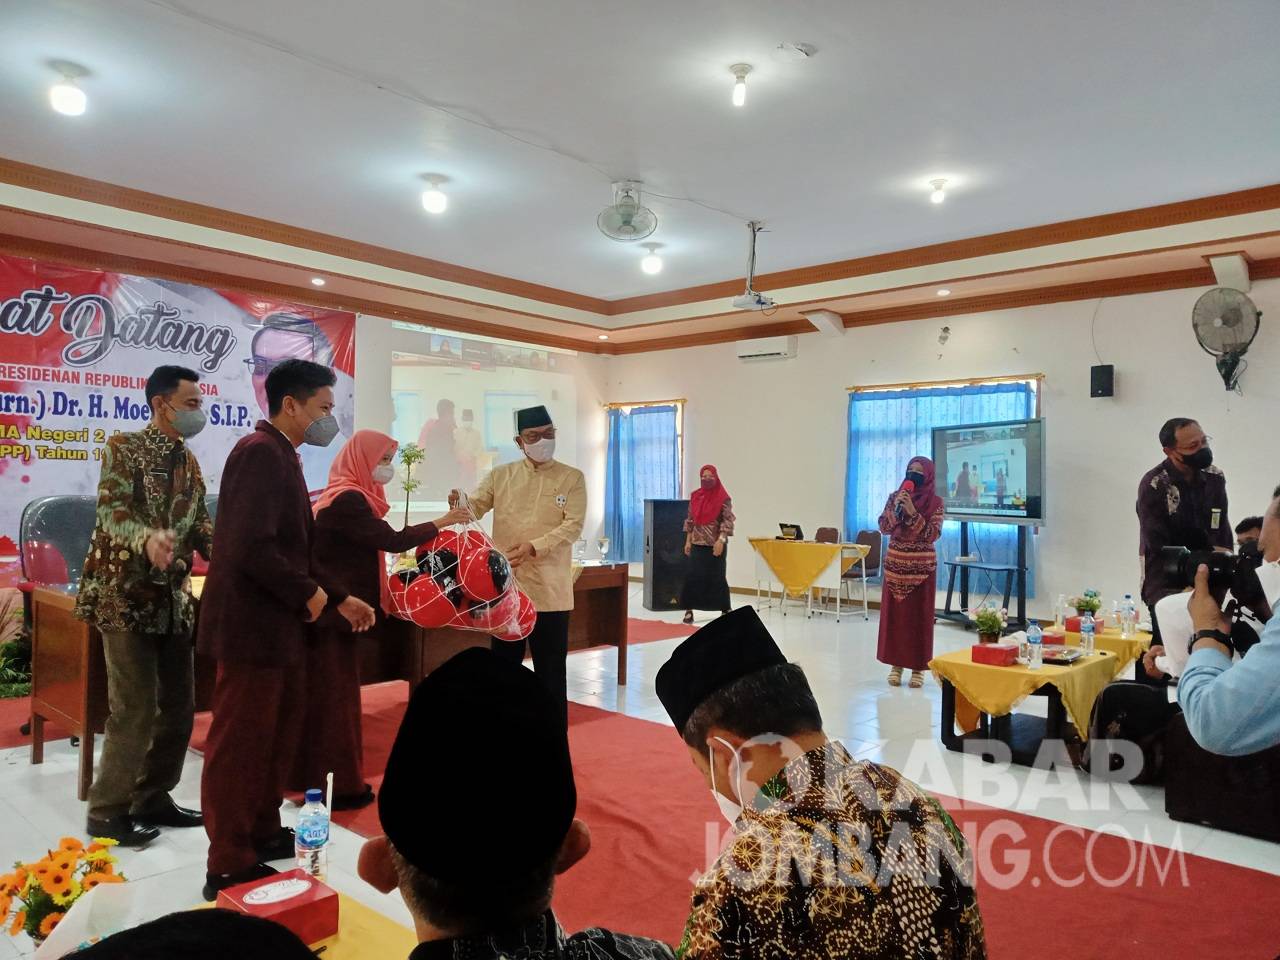 Kepala Staf Kepresidenan Moeldoko Sambangi Jombang, Ziarah ke Makam Gus Dur sambangi Almamater